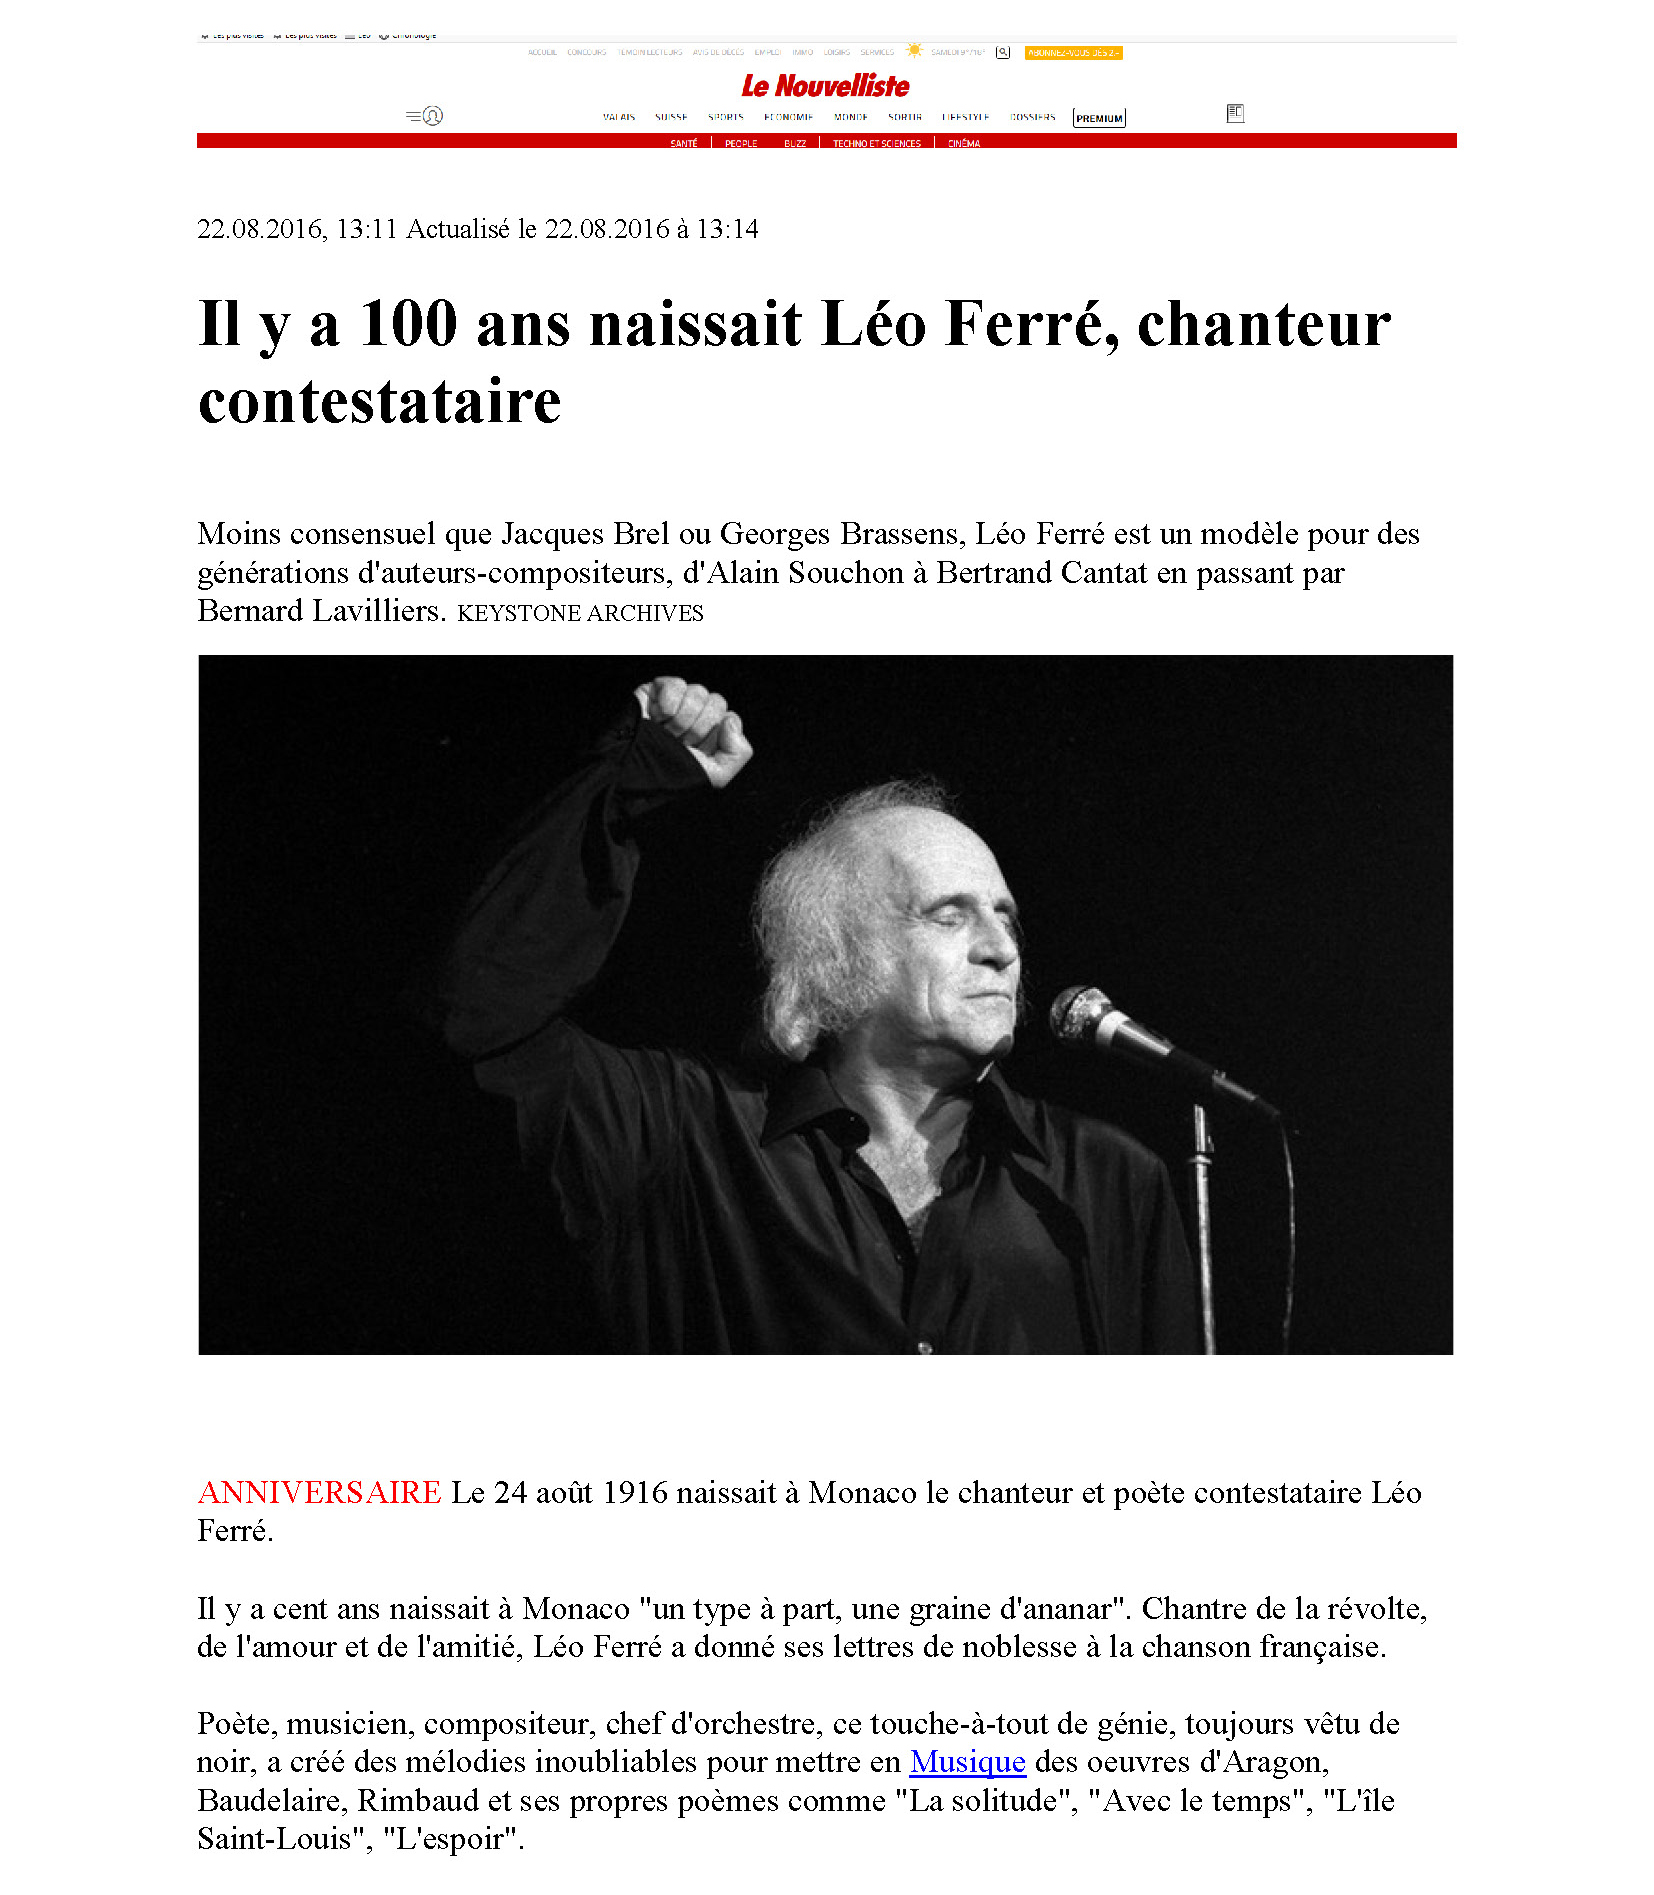 22/08/2016 Le nouvelliste il y a 100 ans naissait Léo Ferré